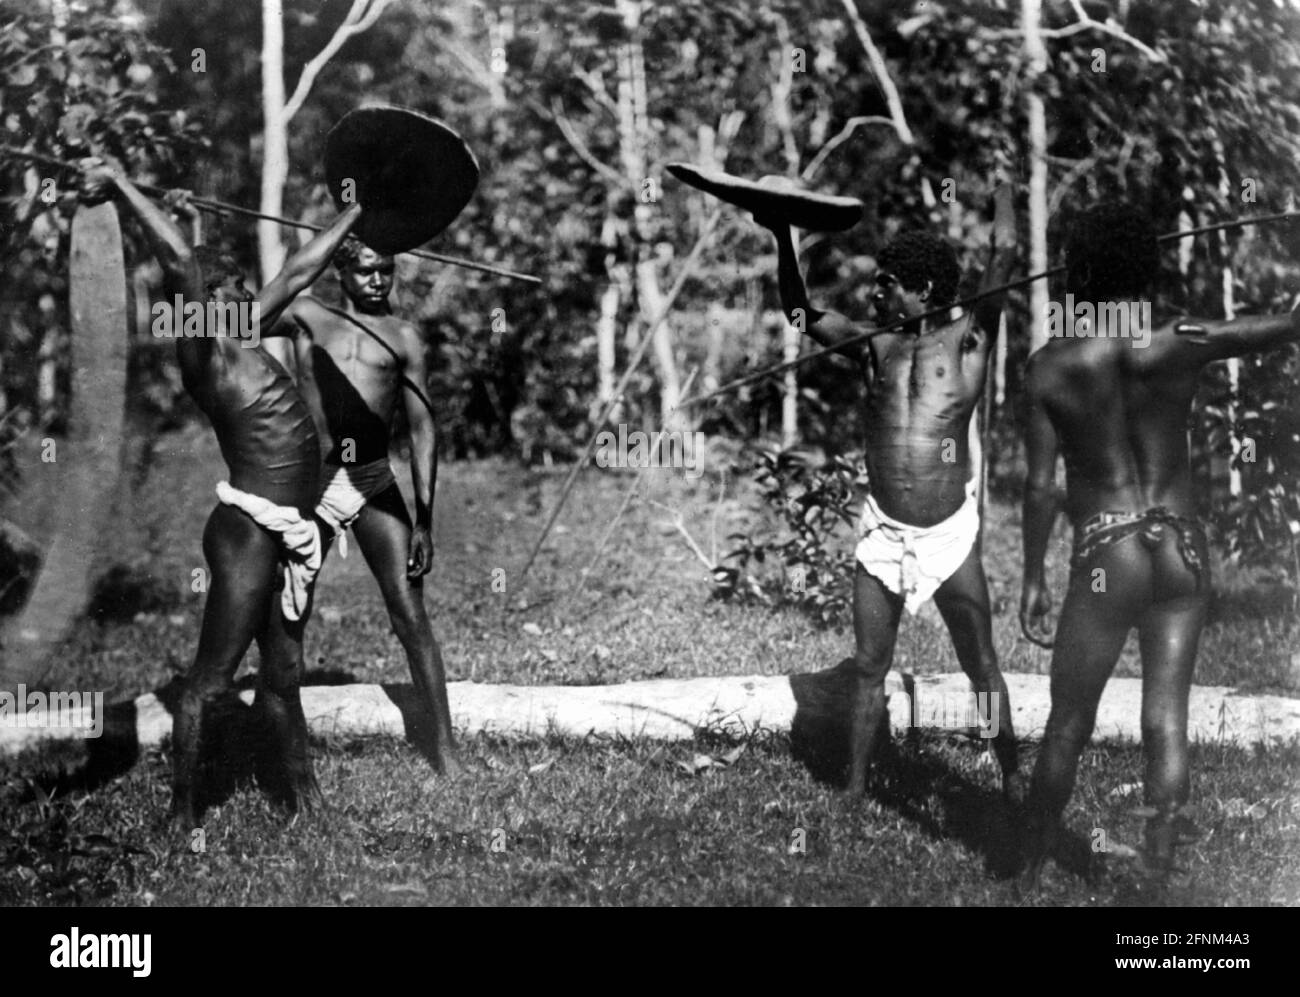 Geographie / Reisen, Australien, Menschen, Aborigine, Männer im Kampfspiel, um 1900, ZUSÄTZLICHE-RIGHTS-CLEARANCE-INFO-NOT-AVAILABLE Stockfoto